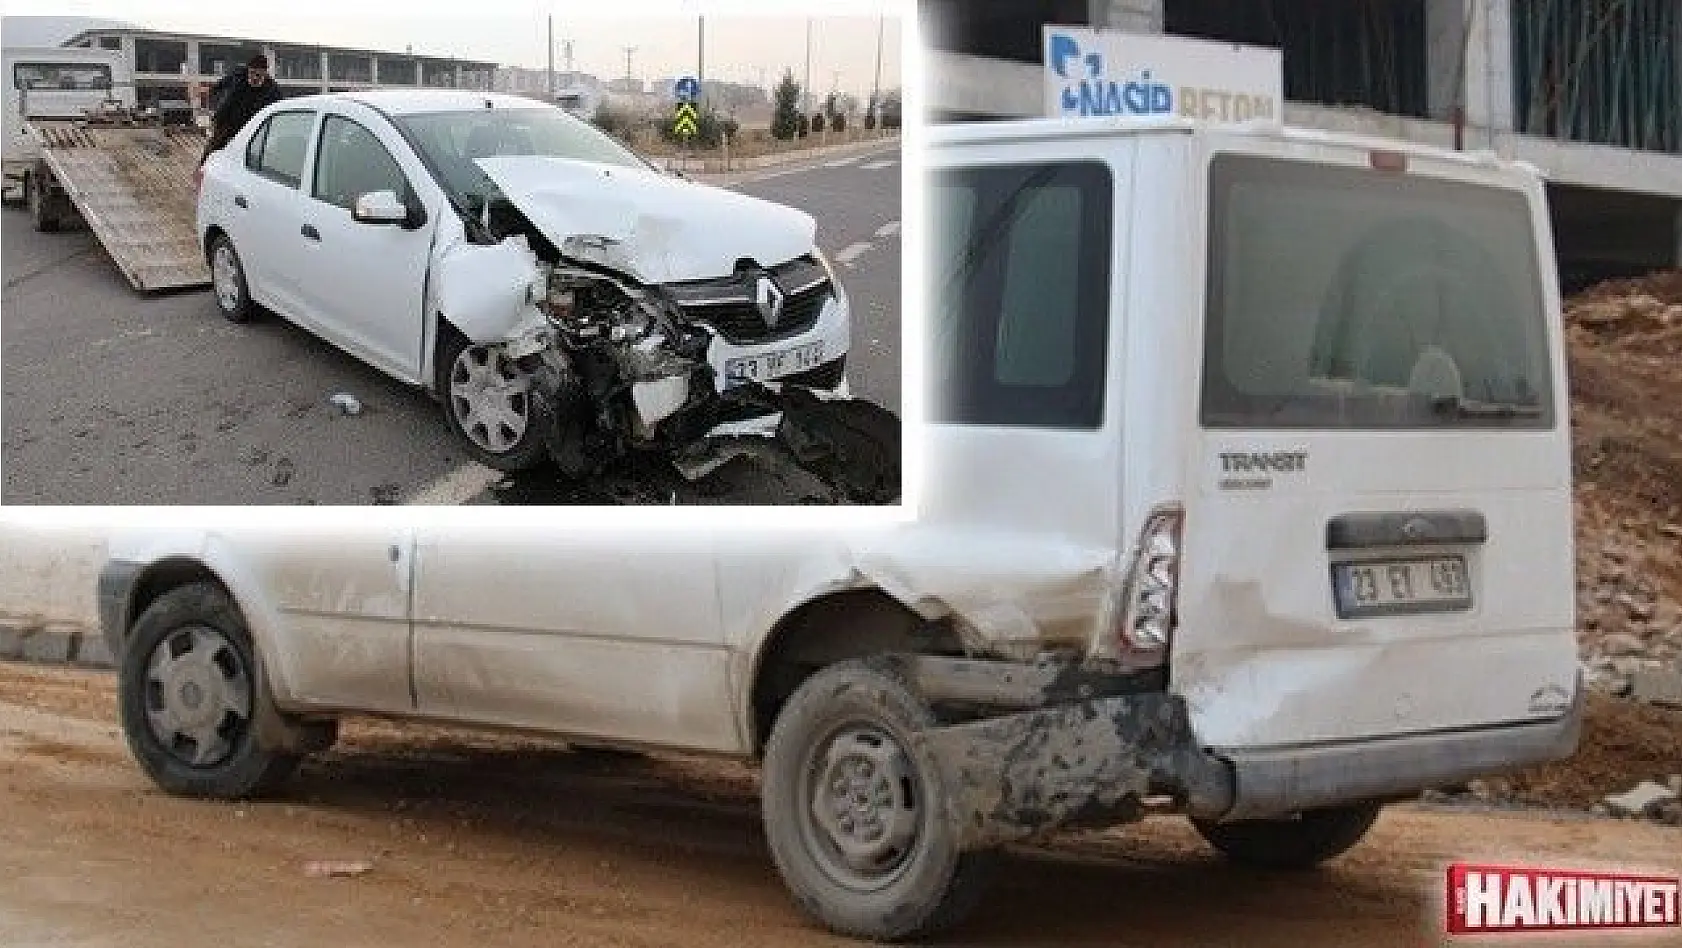 Elazığ'da otomobil ile transit çarpıştı: 3 yaralı